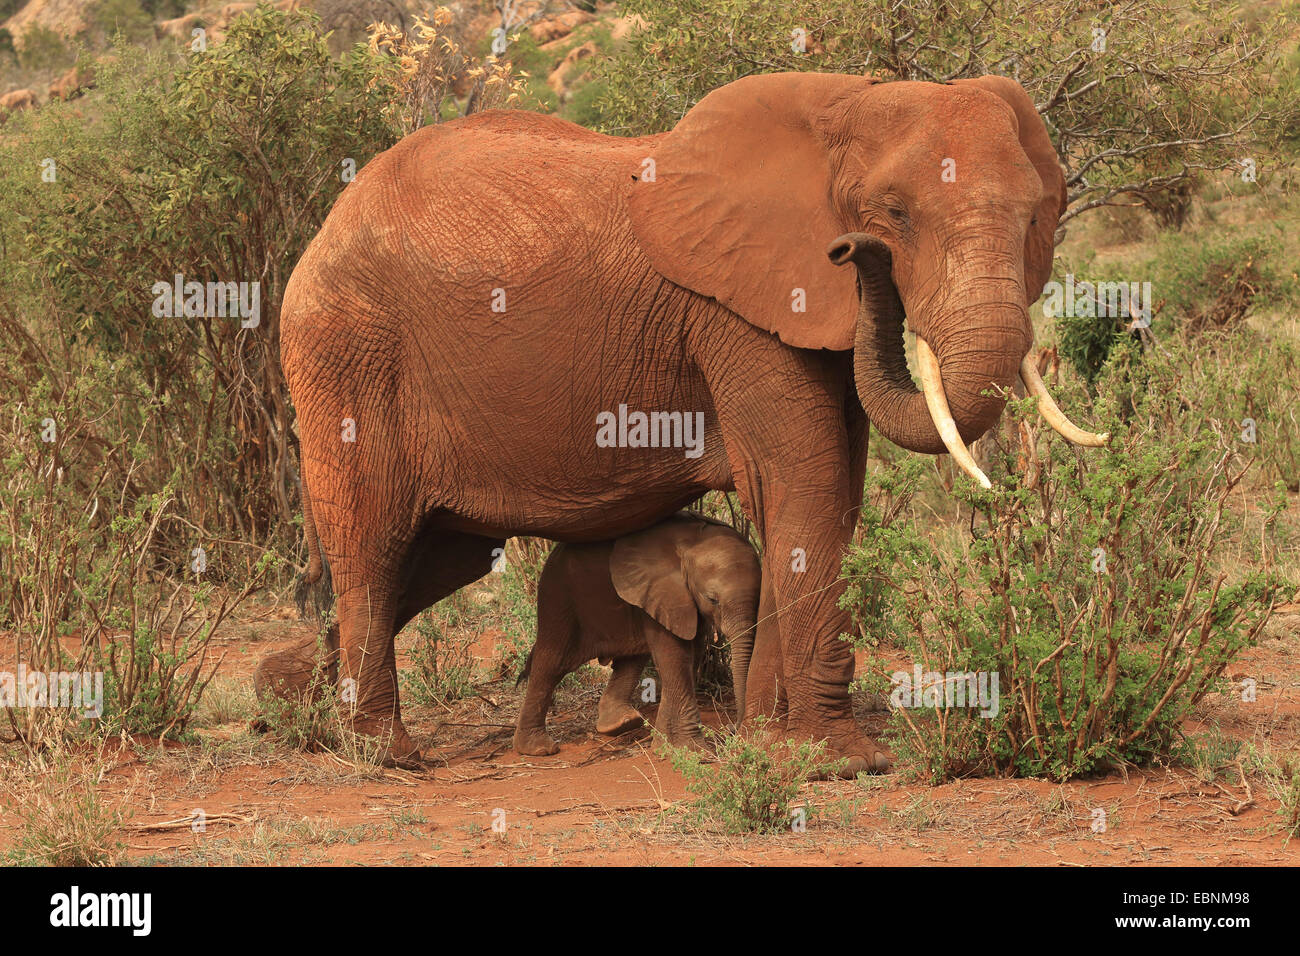 African elephant (Loxodonta africana), female with baby elephant, Kenya, Tsavo East National Park Stock Photo